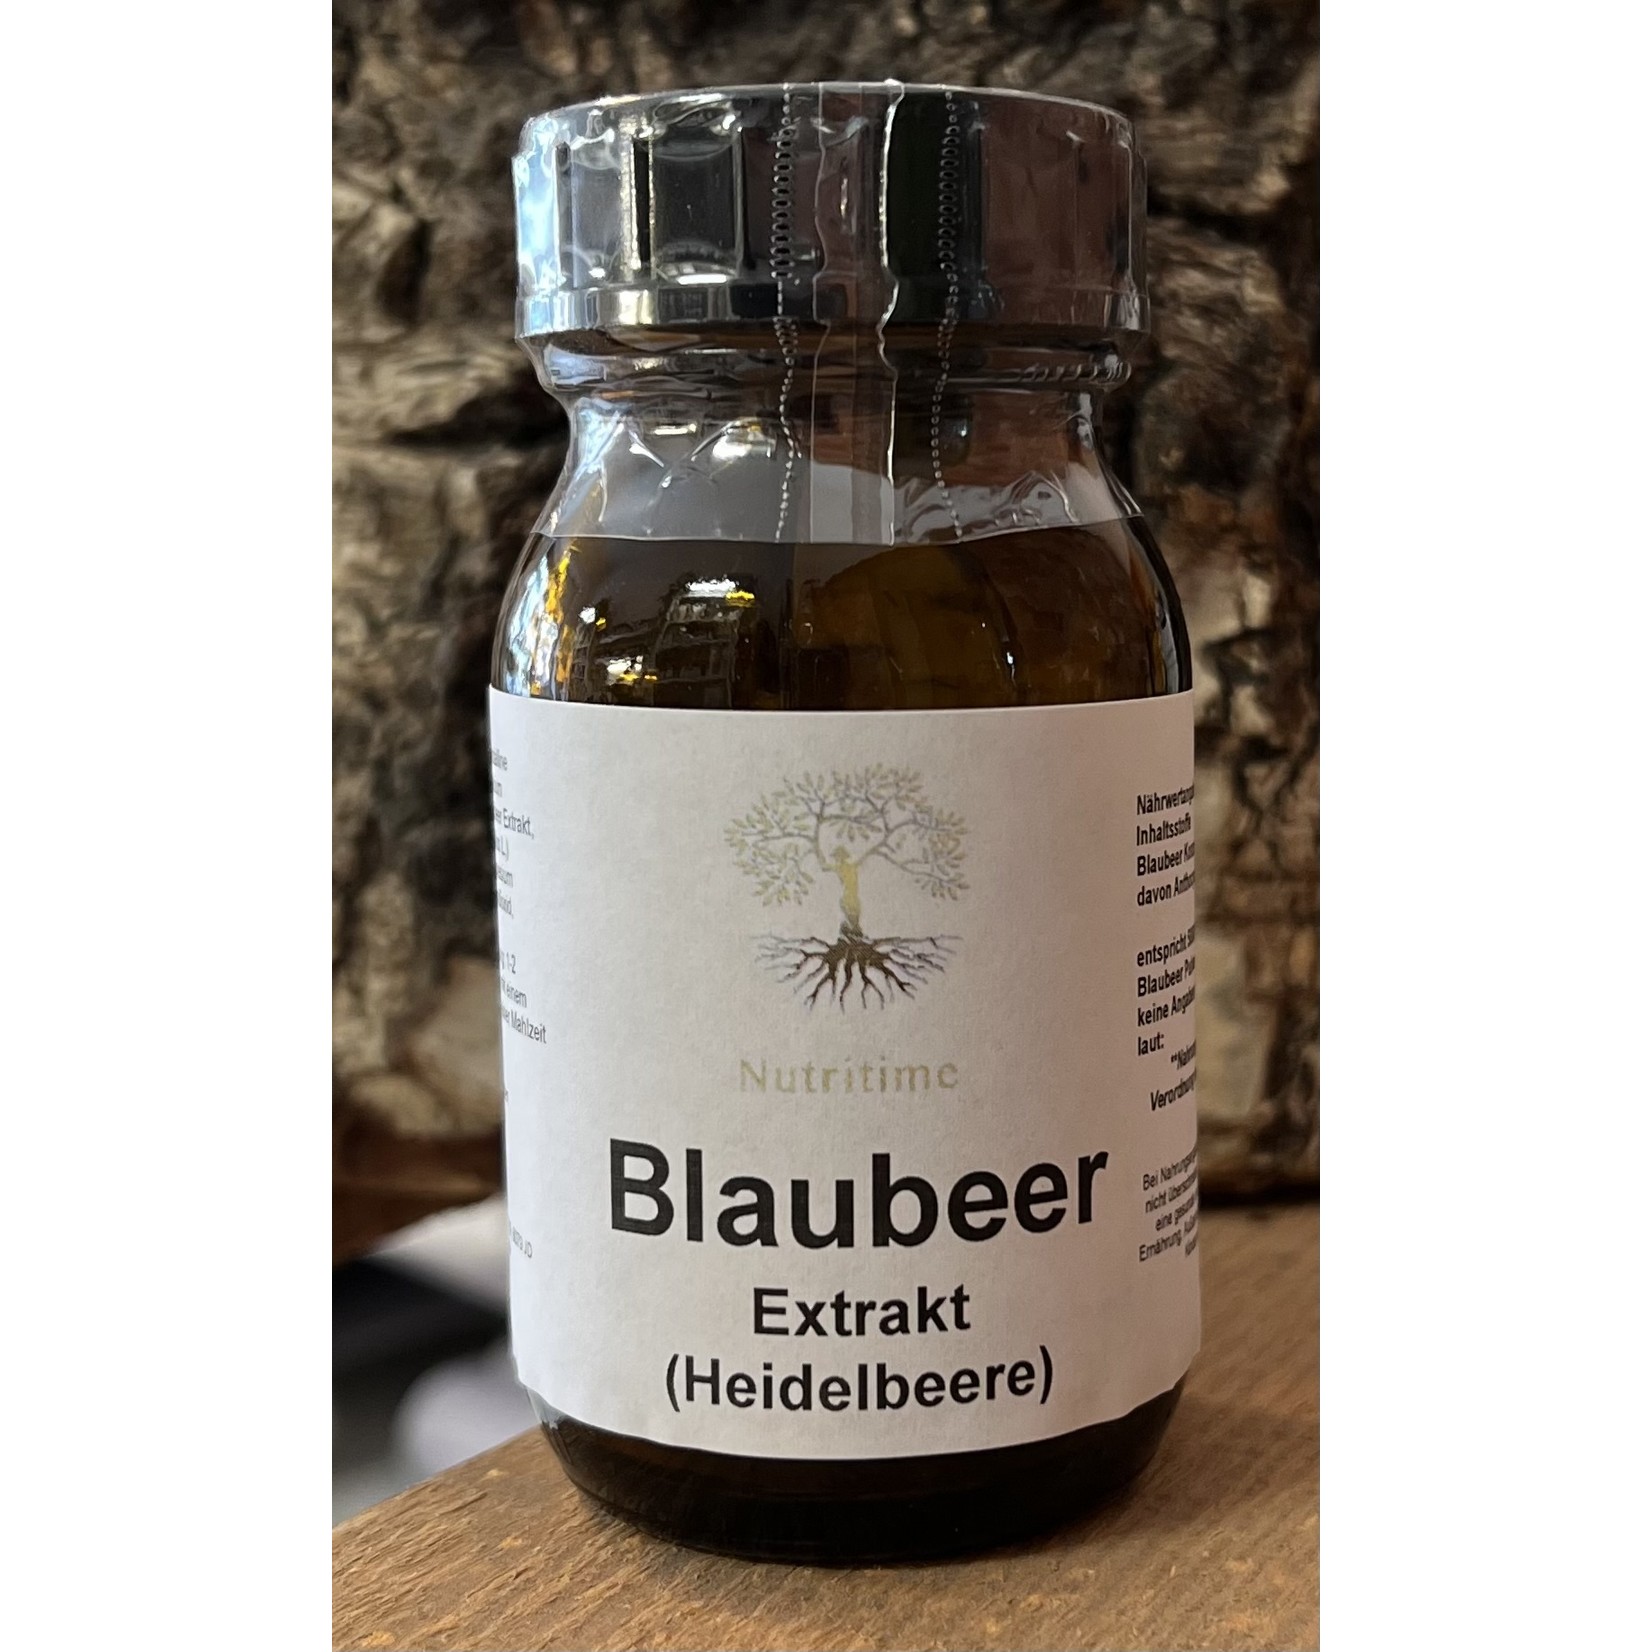 Nutritime Blaubeer (Heidelbeere) Extrakt